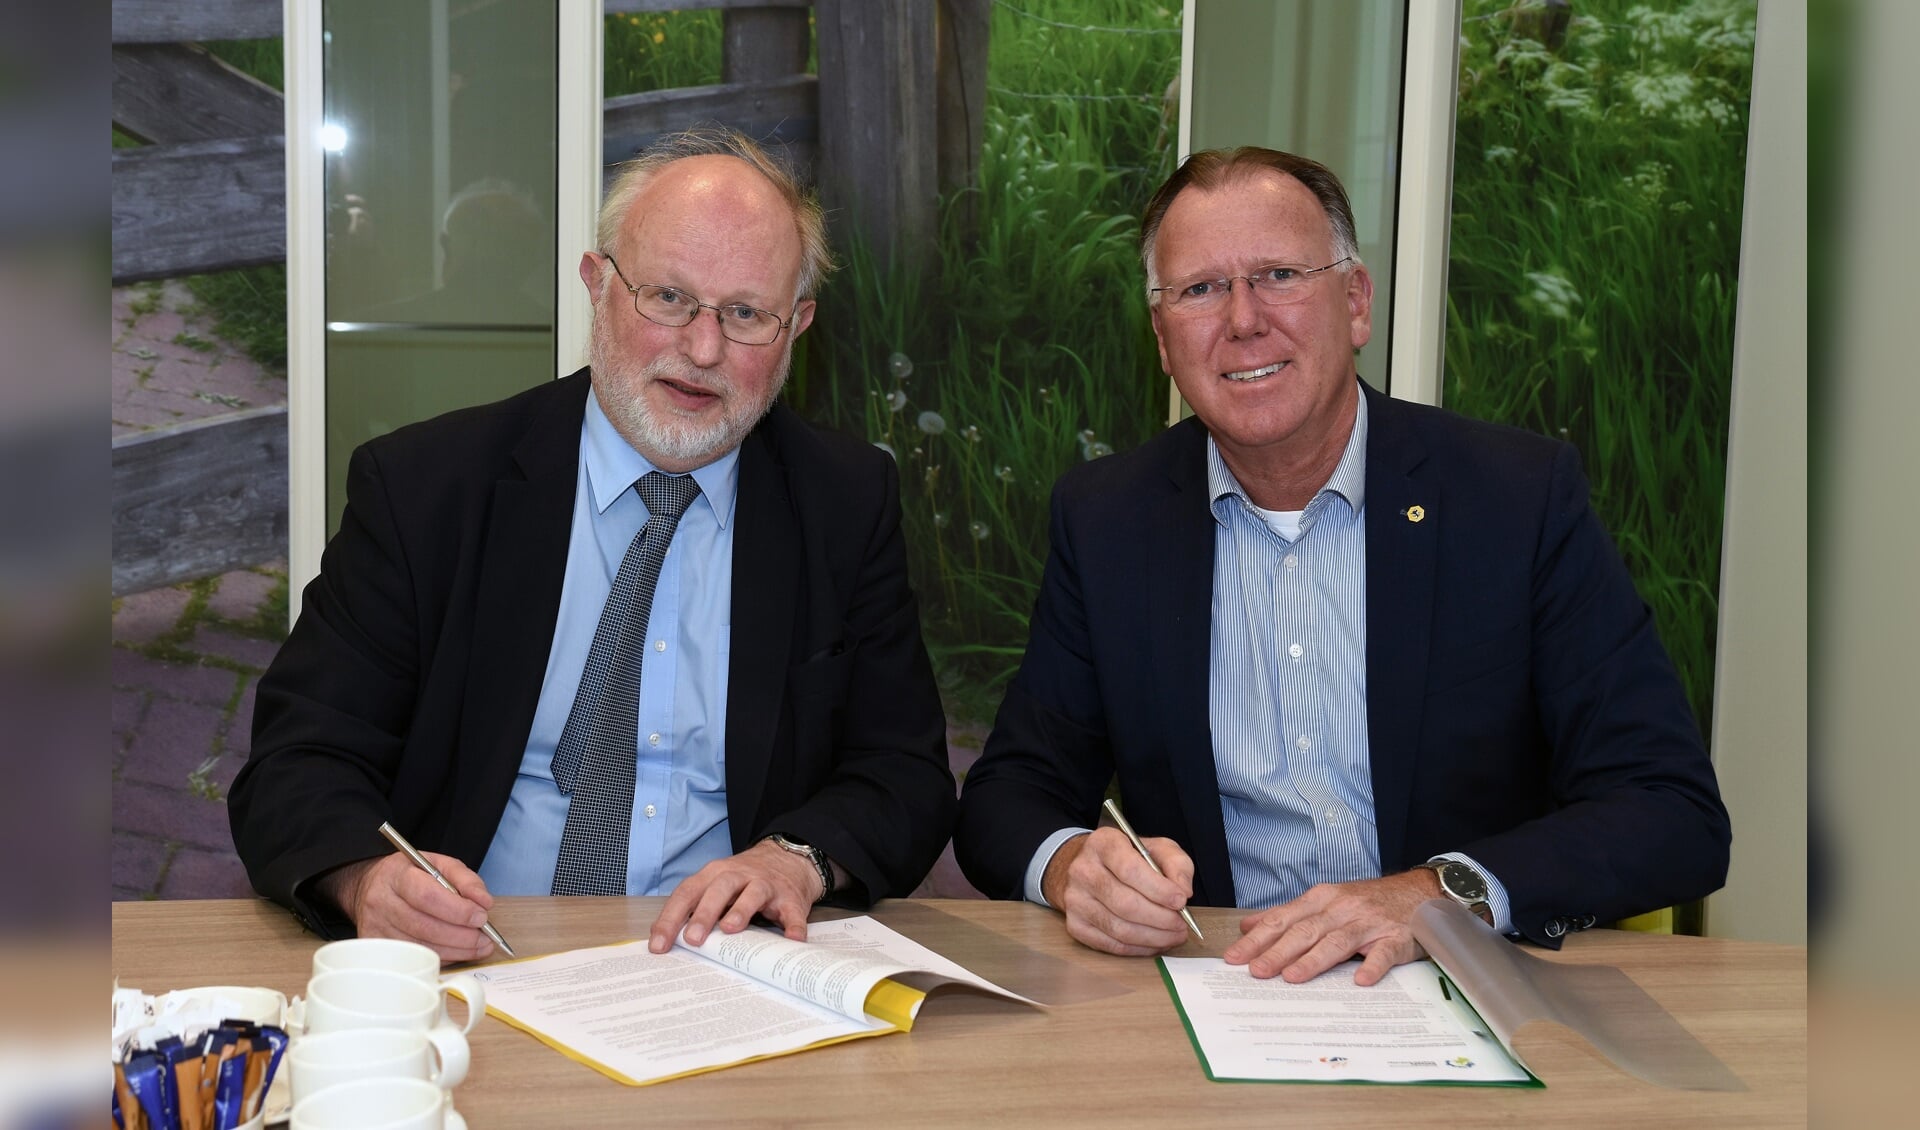 Wethouder Peter Kuiken en hoogheemraad Rob Veenman ondertekenden donderdag 8 maart de intentieovereenkomst Overname Stedelijk Water Drechterland. (Foto: aangeleverd)